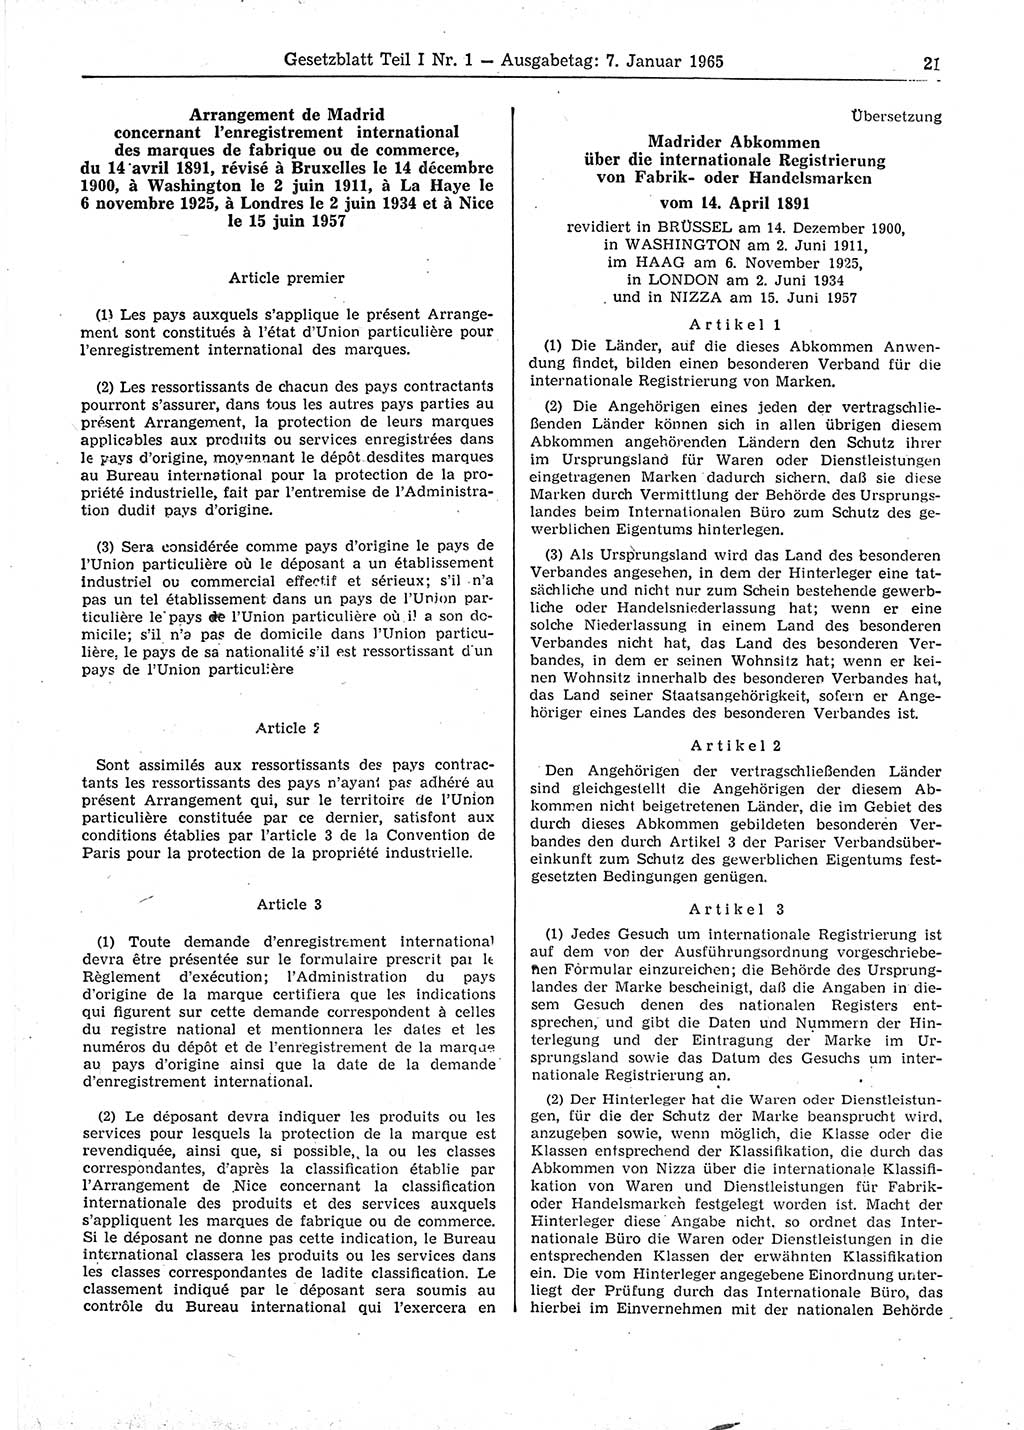 Gesetzblatt (GBl.) der Deutschen Demokratischen Republik (DDR) Teil Ⅰ 1965, Seite 21 (GBl. DDR Ⅰ 1965, S. 21)